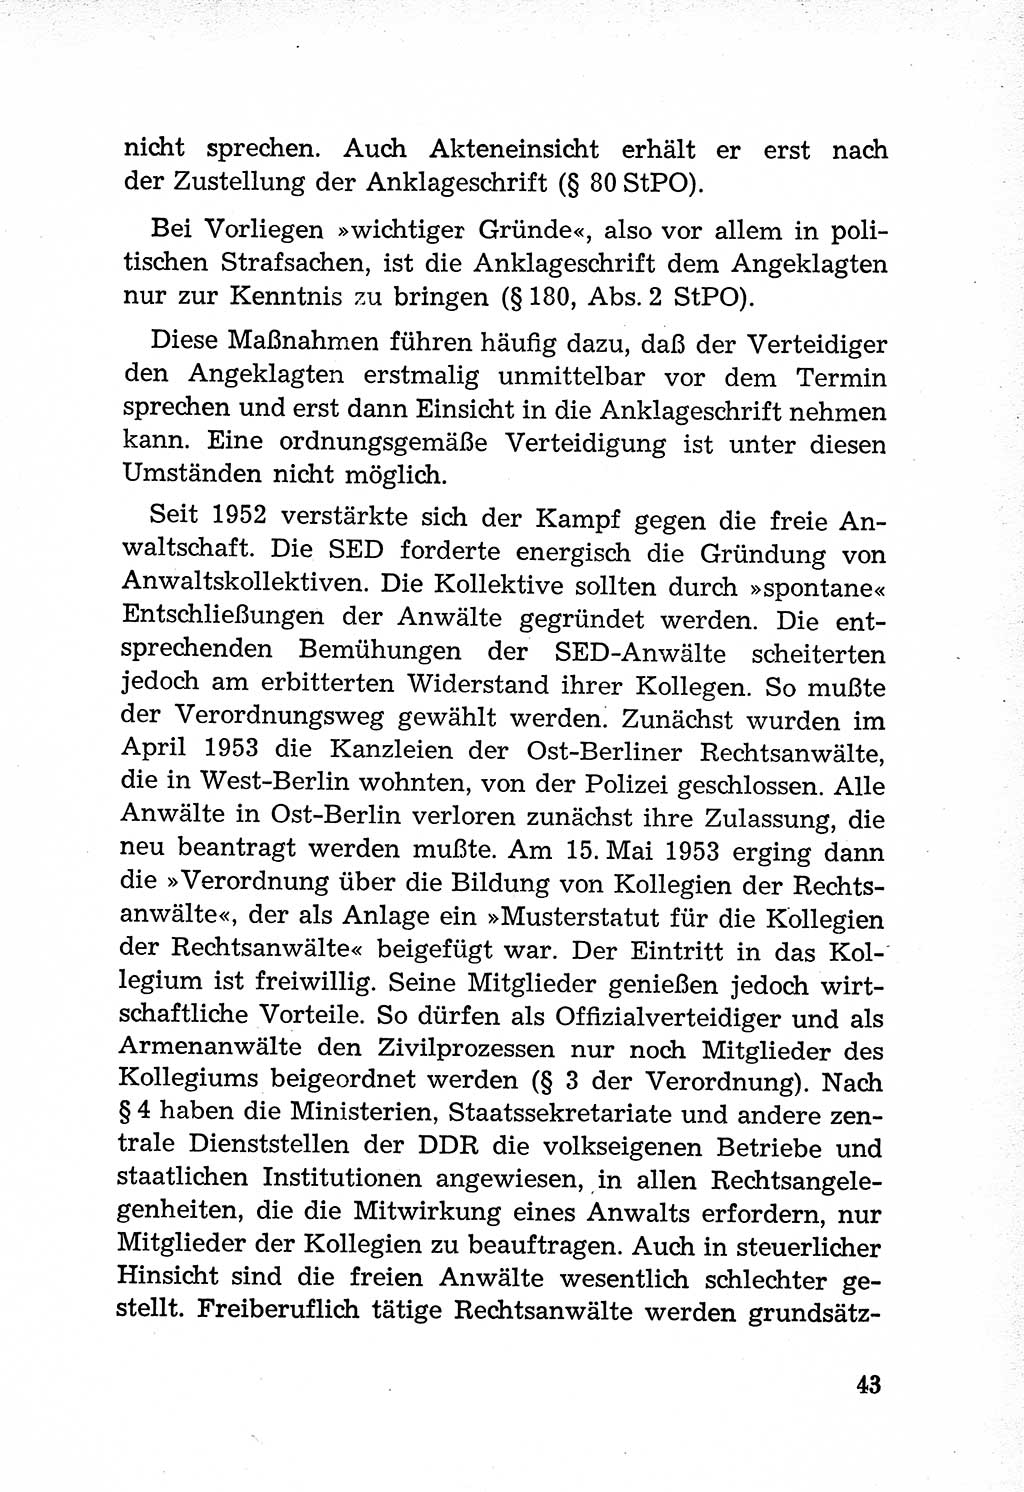 Rechtsstaat in zweierlei Hinsicht, Untersuchungsausschuß freiheitlicher Juristen (UfJ) [Bundesrepublik Deutschland (BRD)] 1956, Seite 43 (R.-St. UfJ BRD 1956, S. 43)